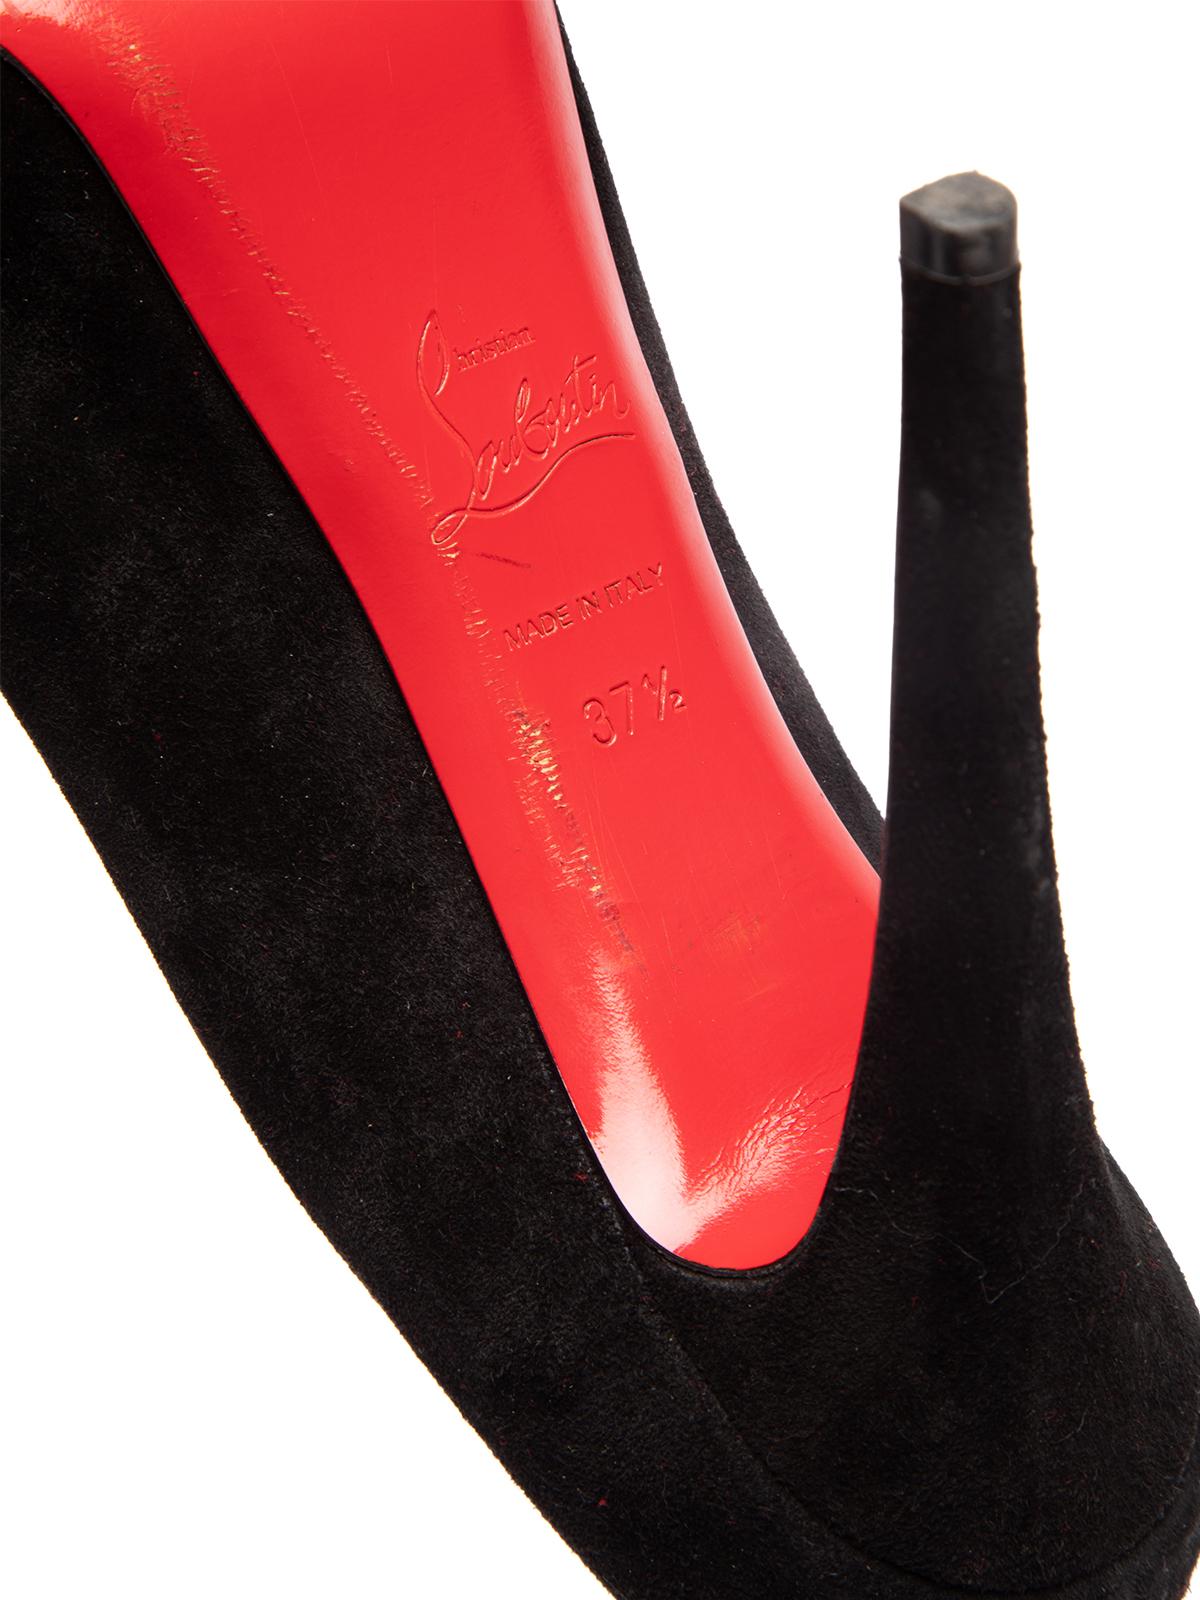 Pre-Loved Christian Louboutin Women's Eloise 85 Heels Black Suede 1